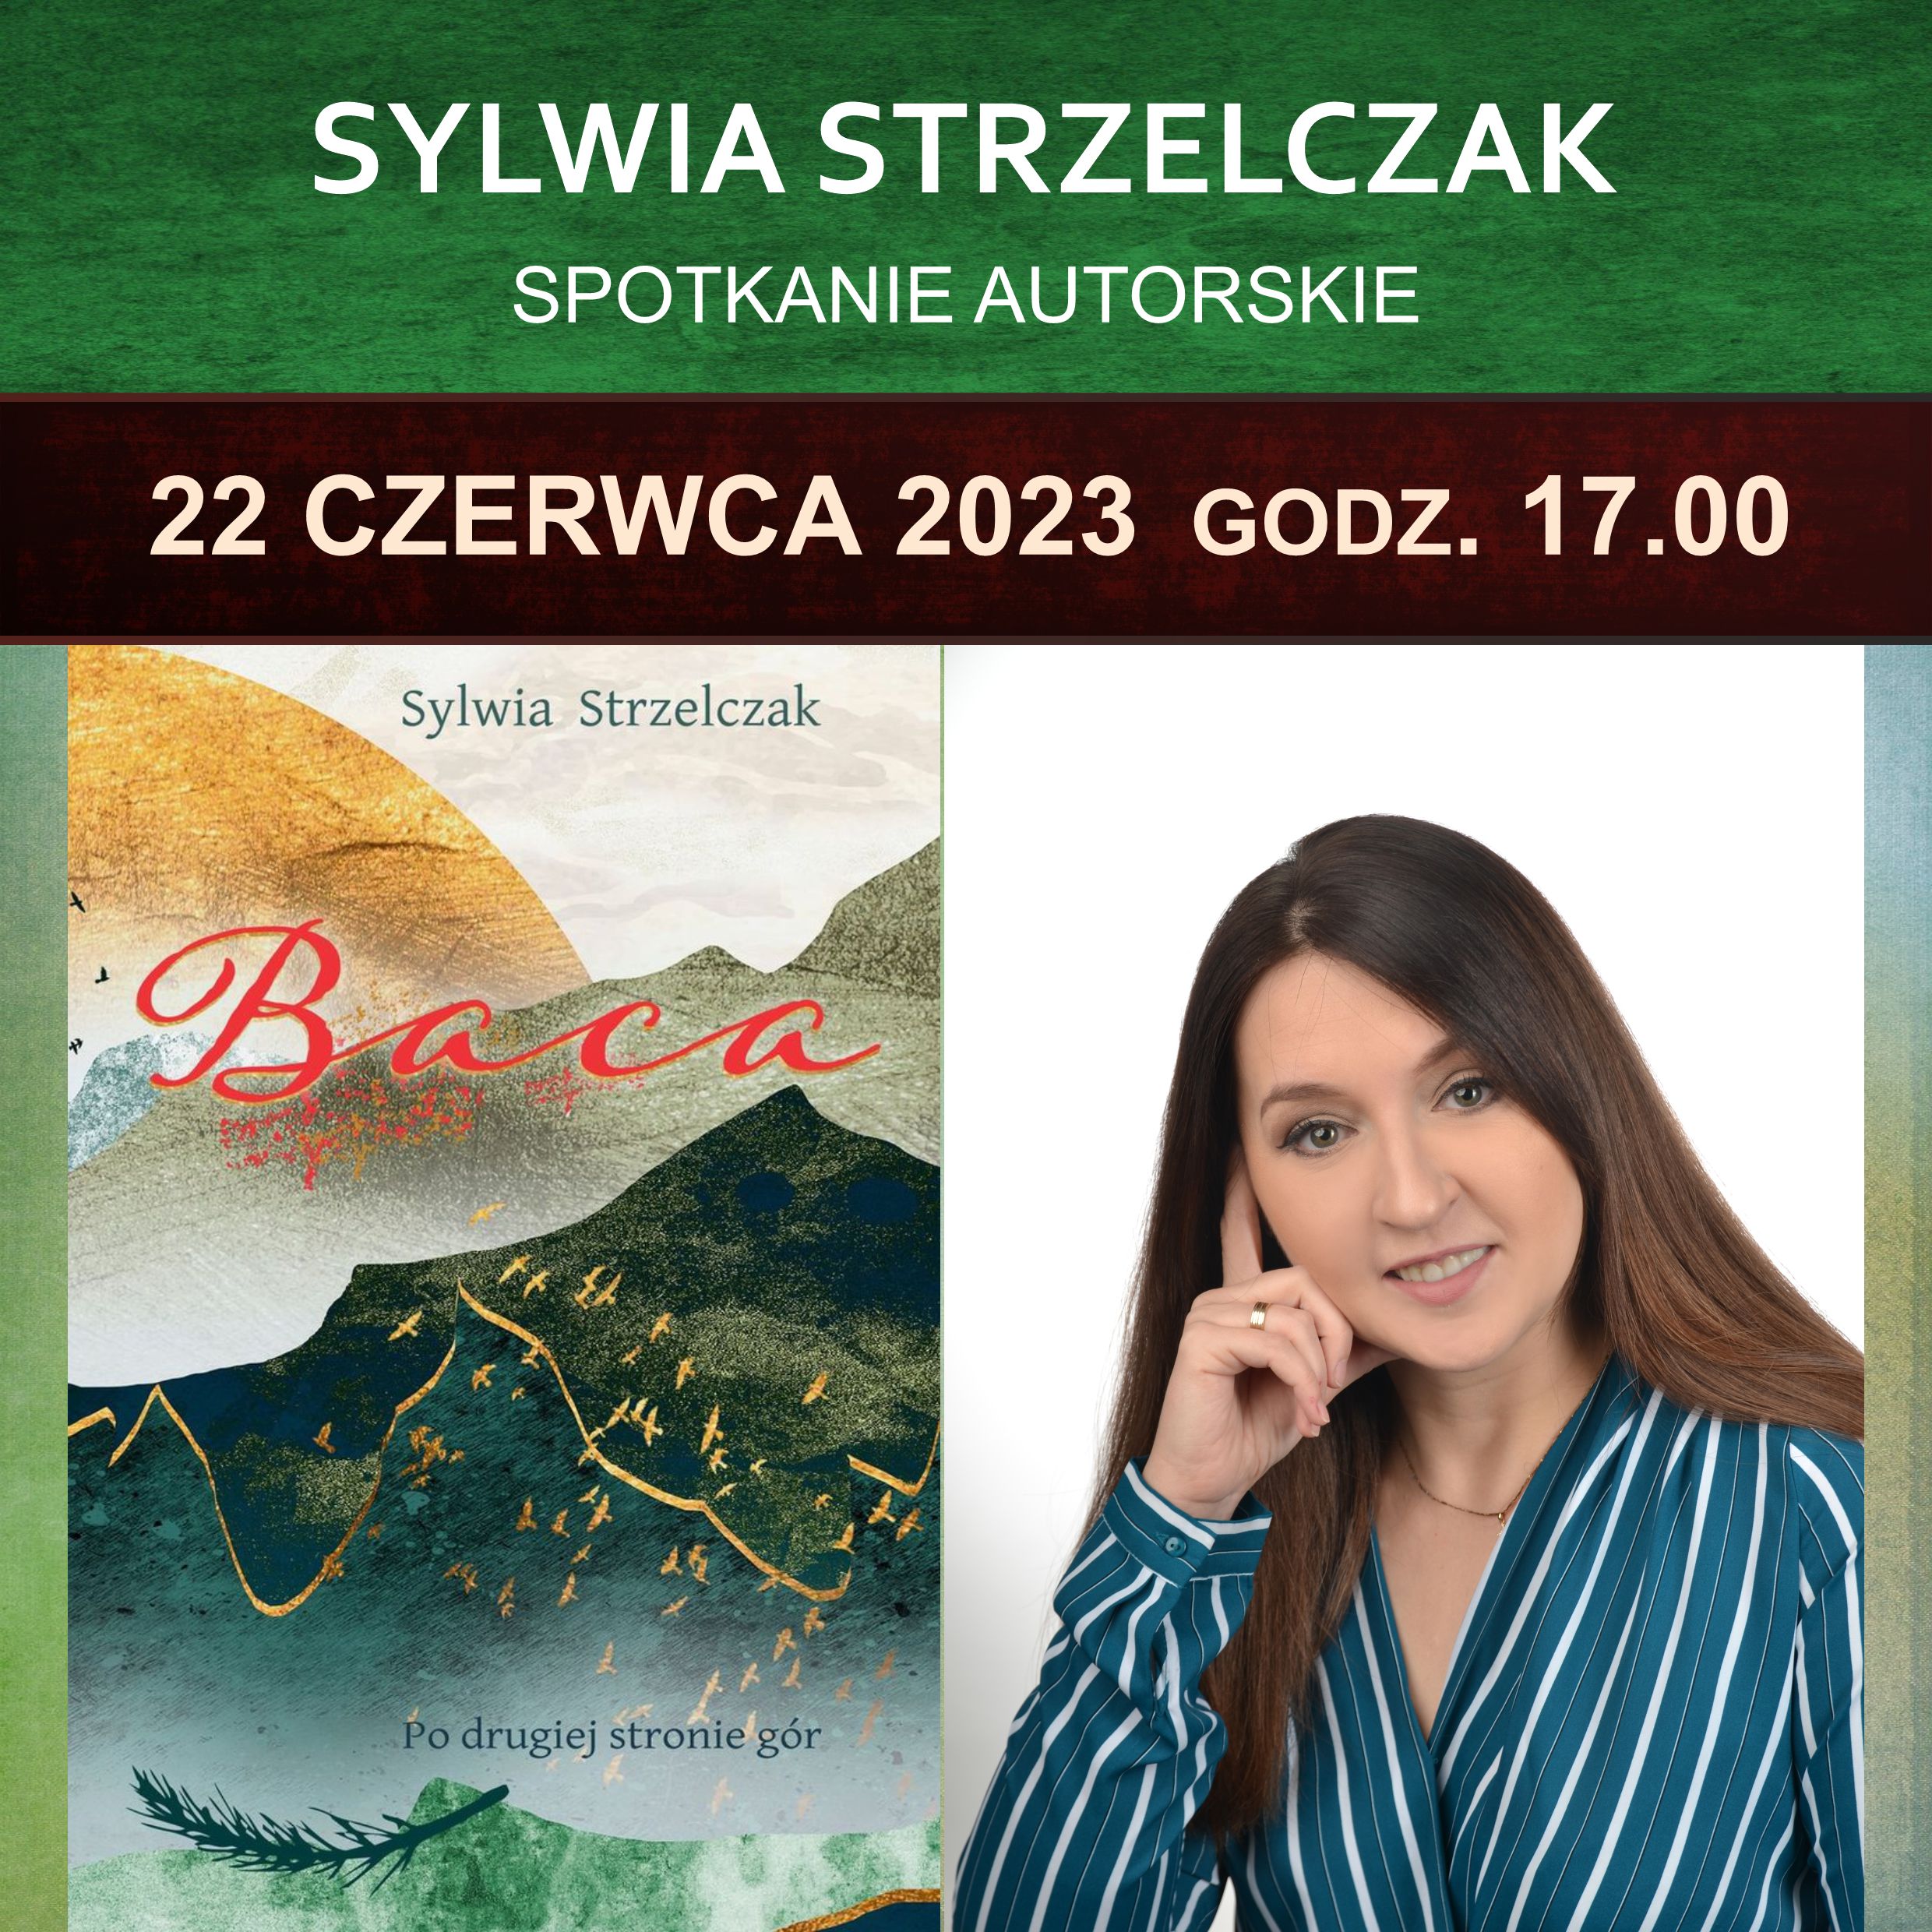 SYLWIA STRZELCZAK, SPOTKANIE AUTORSKIE – 22 Czerwca 2023, Godz. 17.00